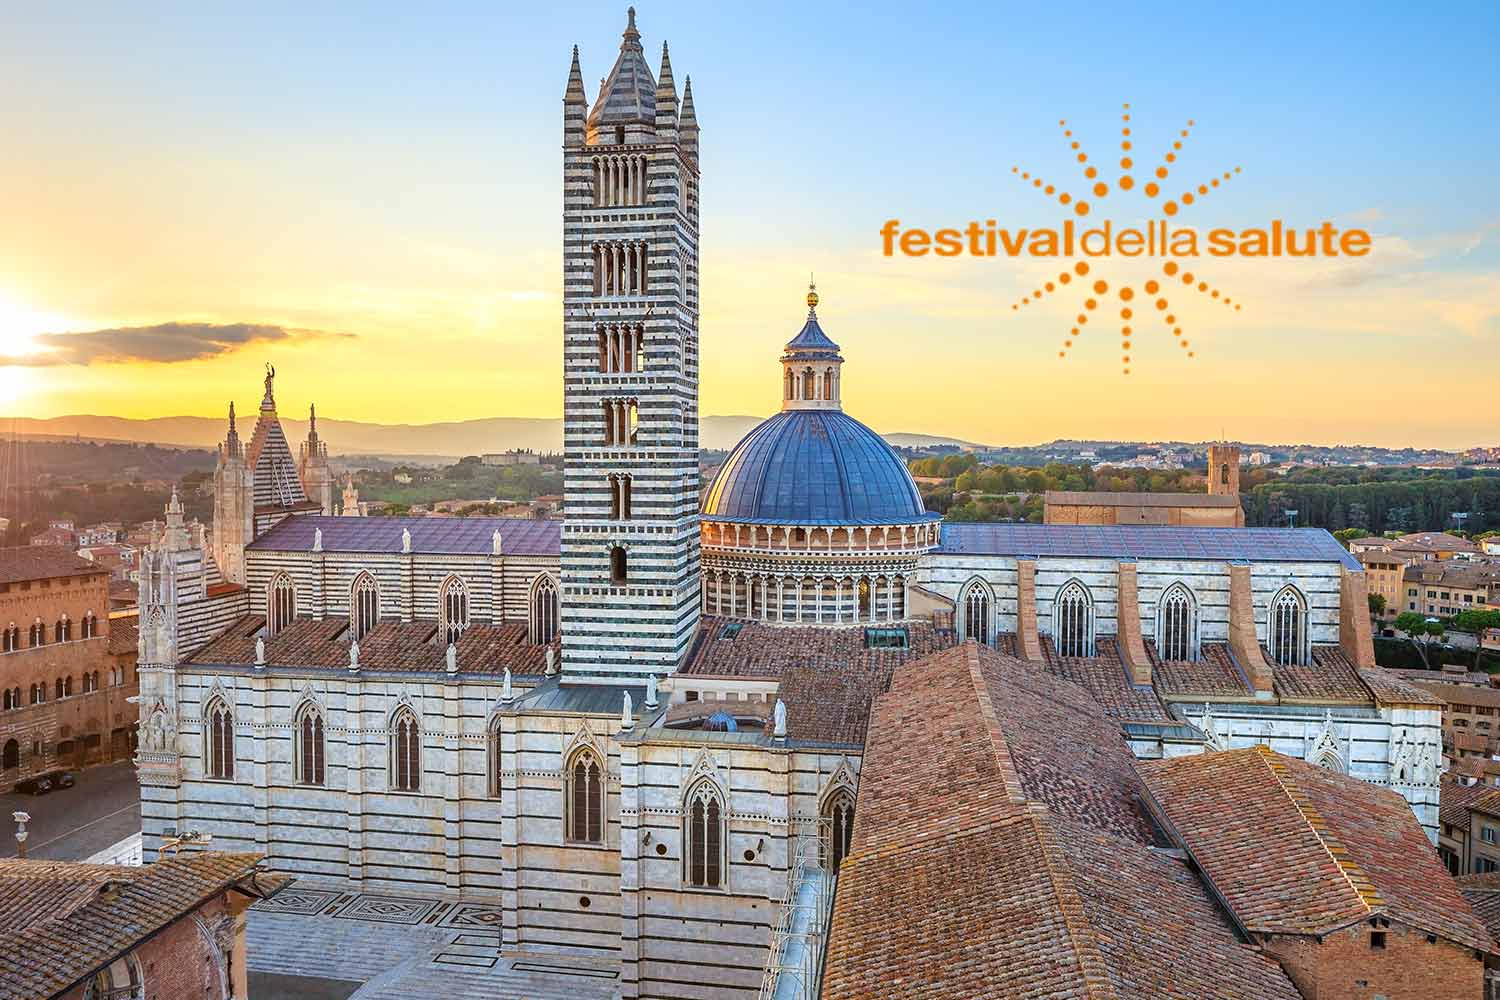 Vista di Siena dall'alto, con logo del Festival della Salute